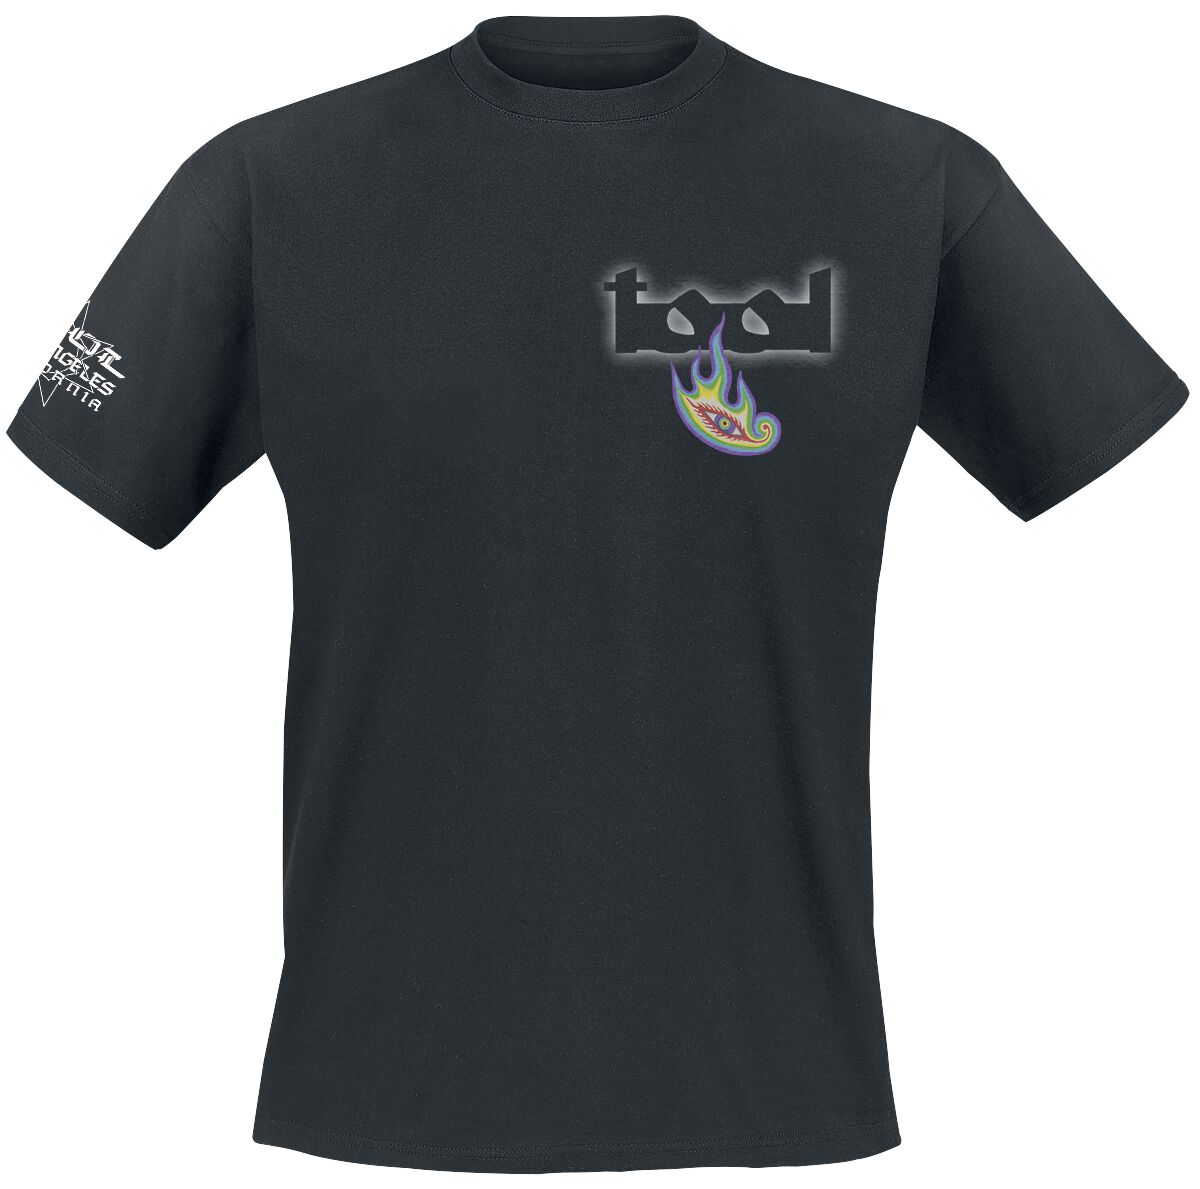 Tool T-Shirt - Lateralus - S bis XXL - für Männer - Größe L - schwarz  - Lizenziertes Merchandise!